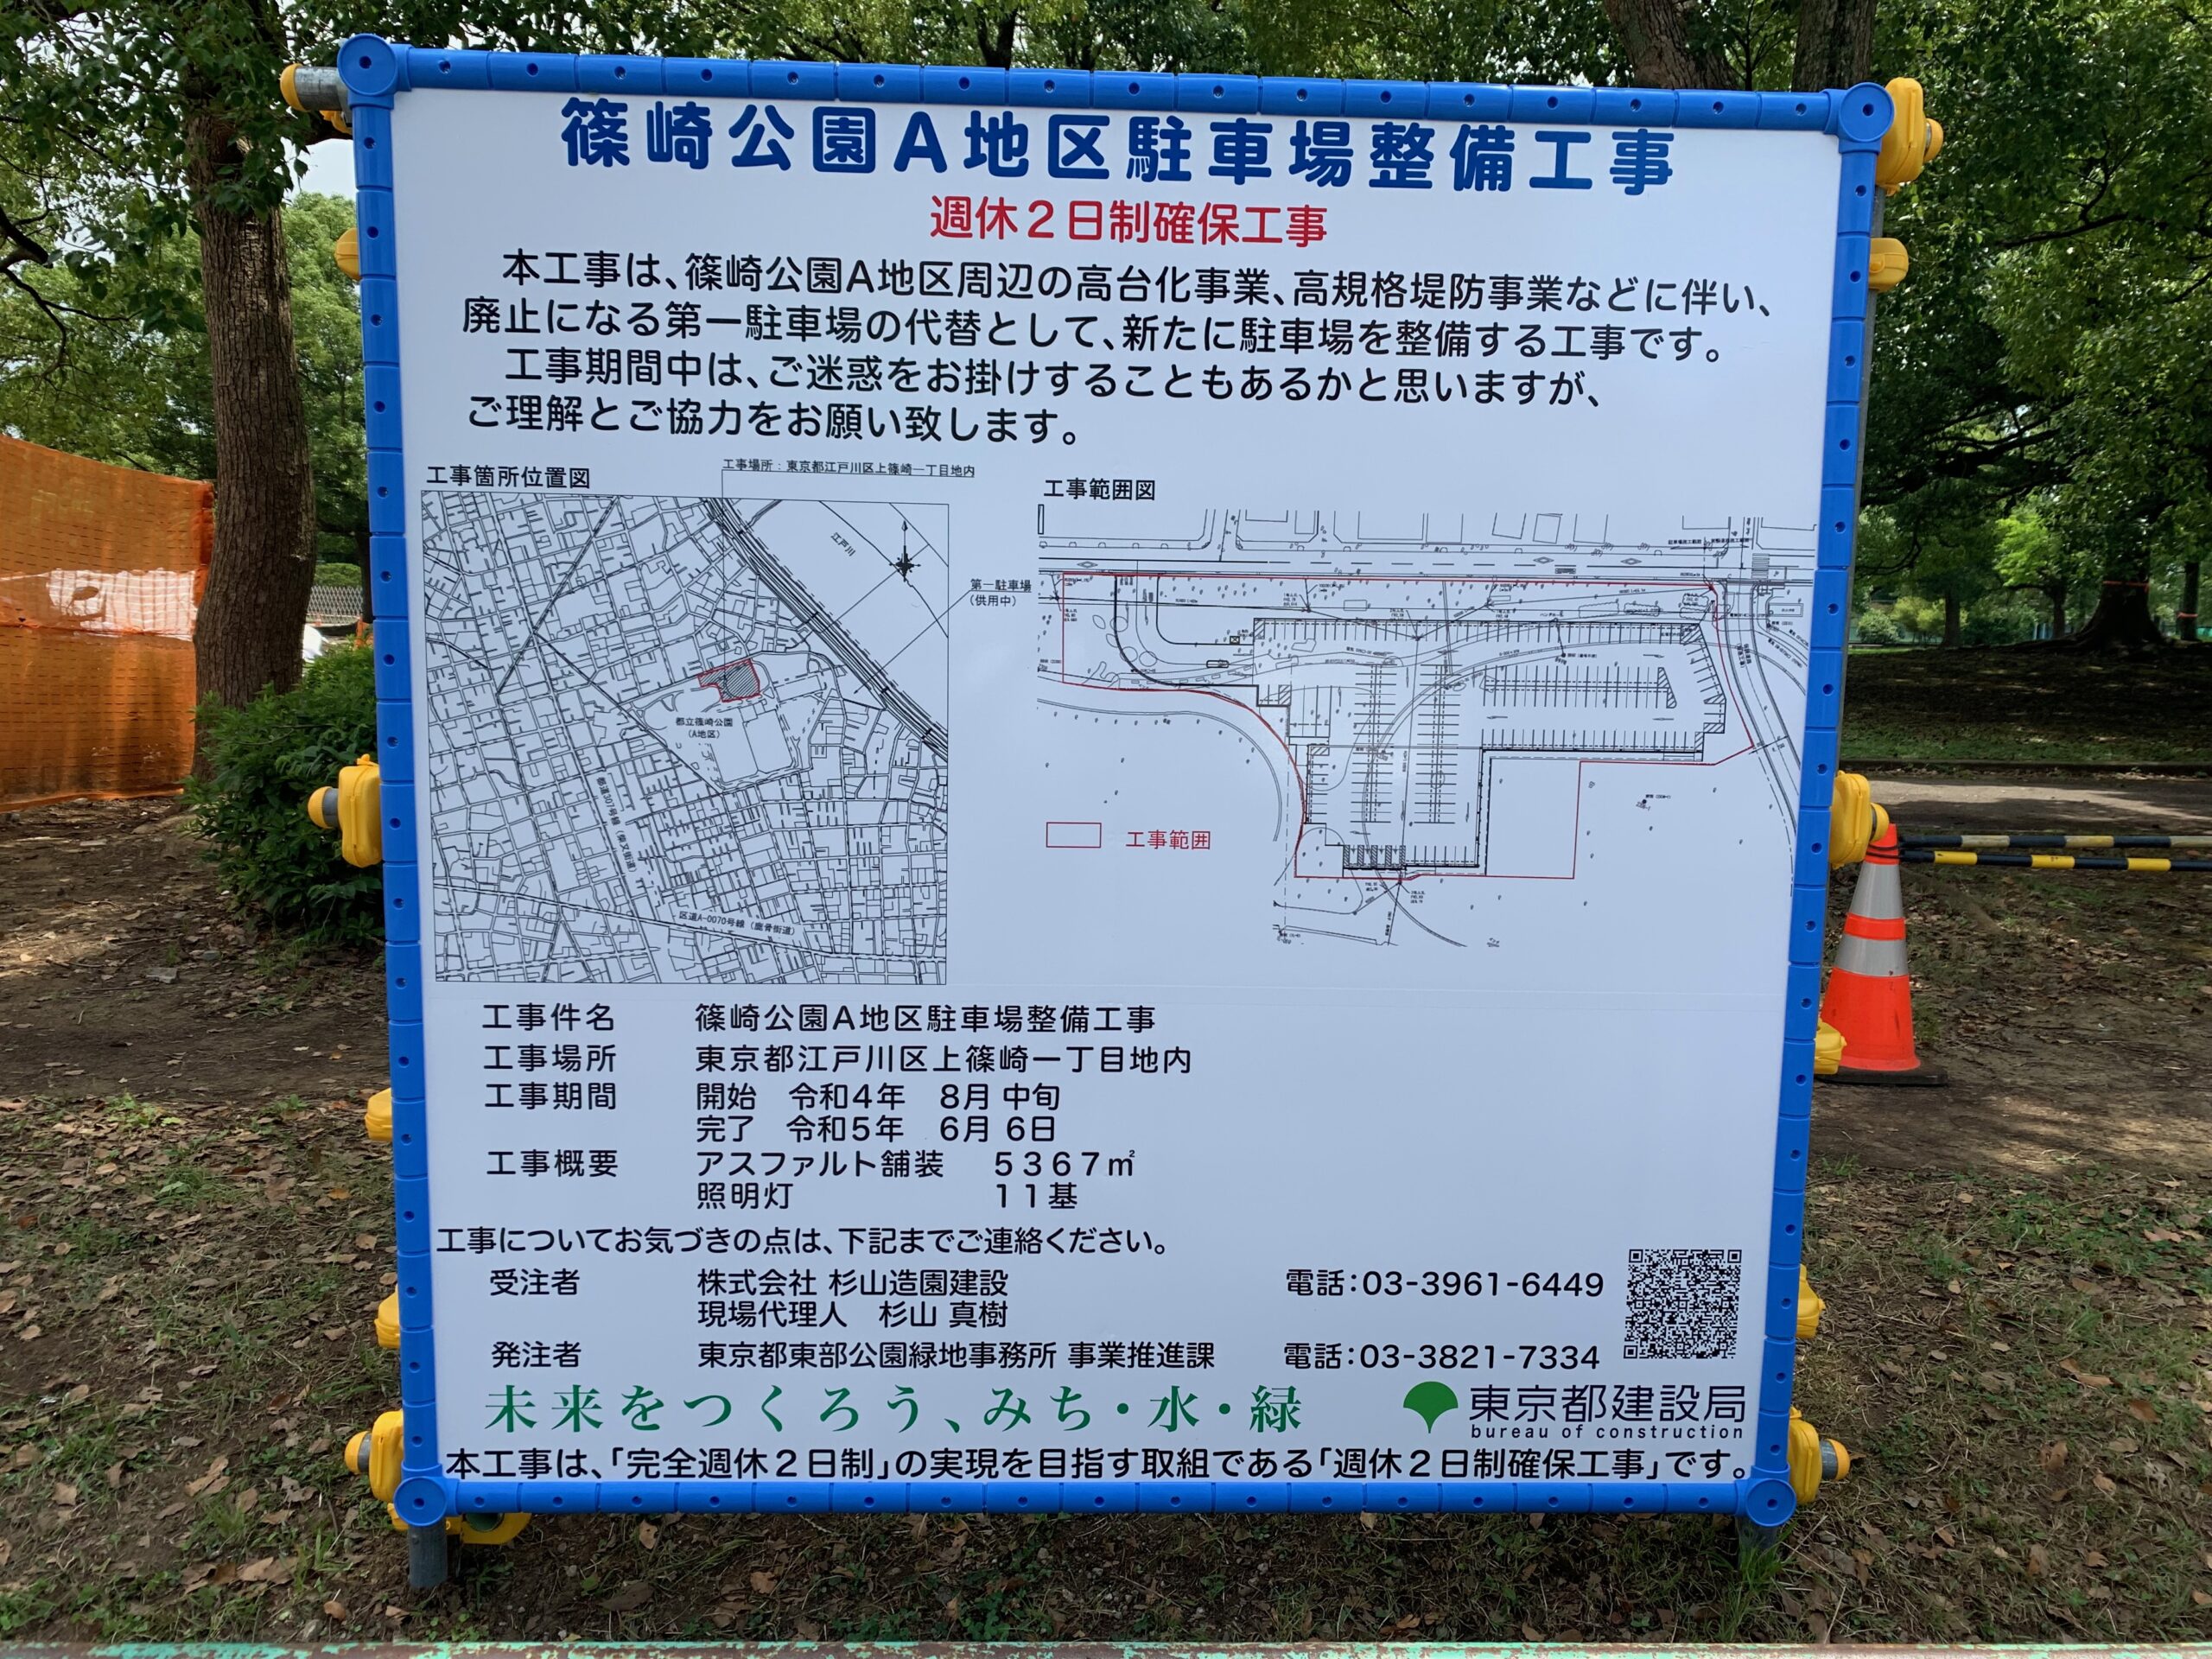 篠崎公園A地区駐車場整備工事